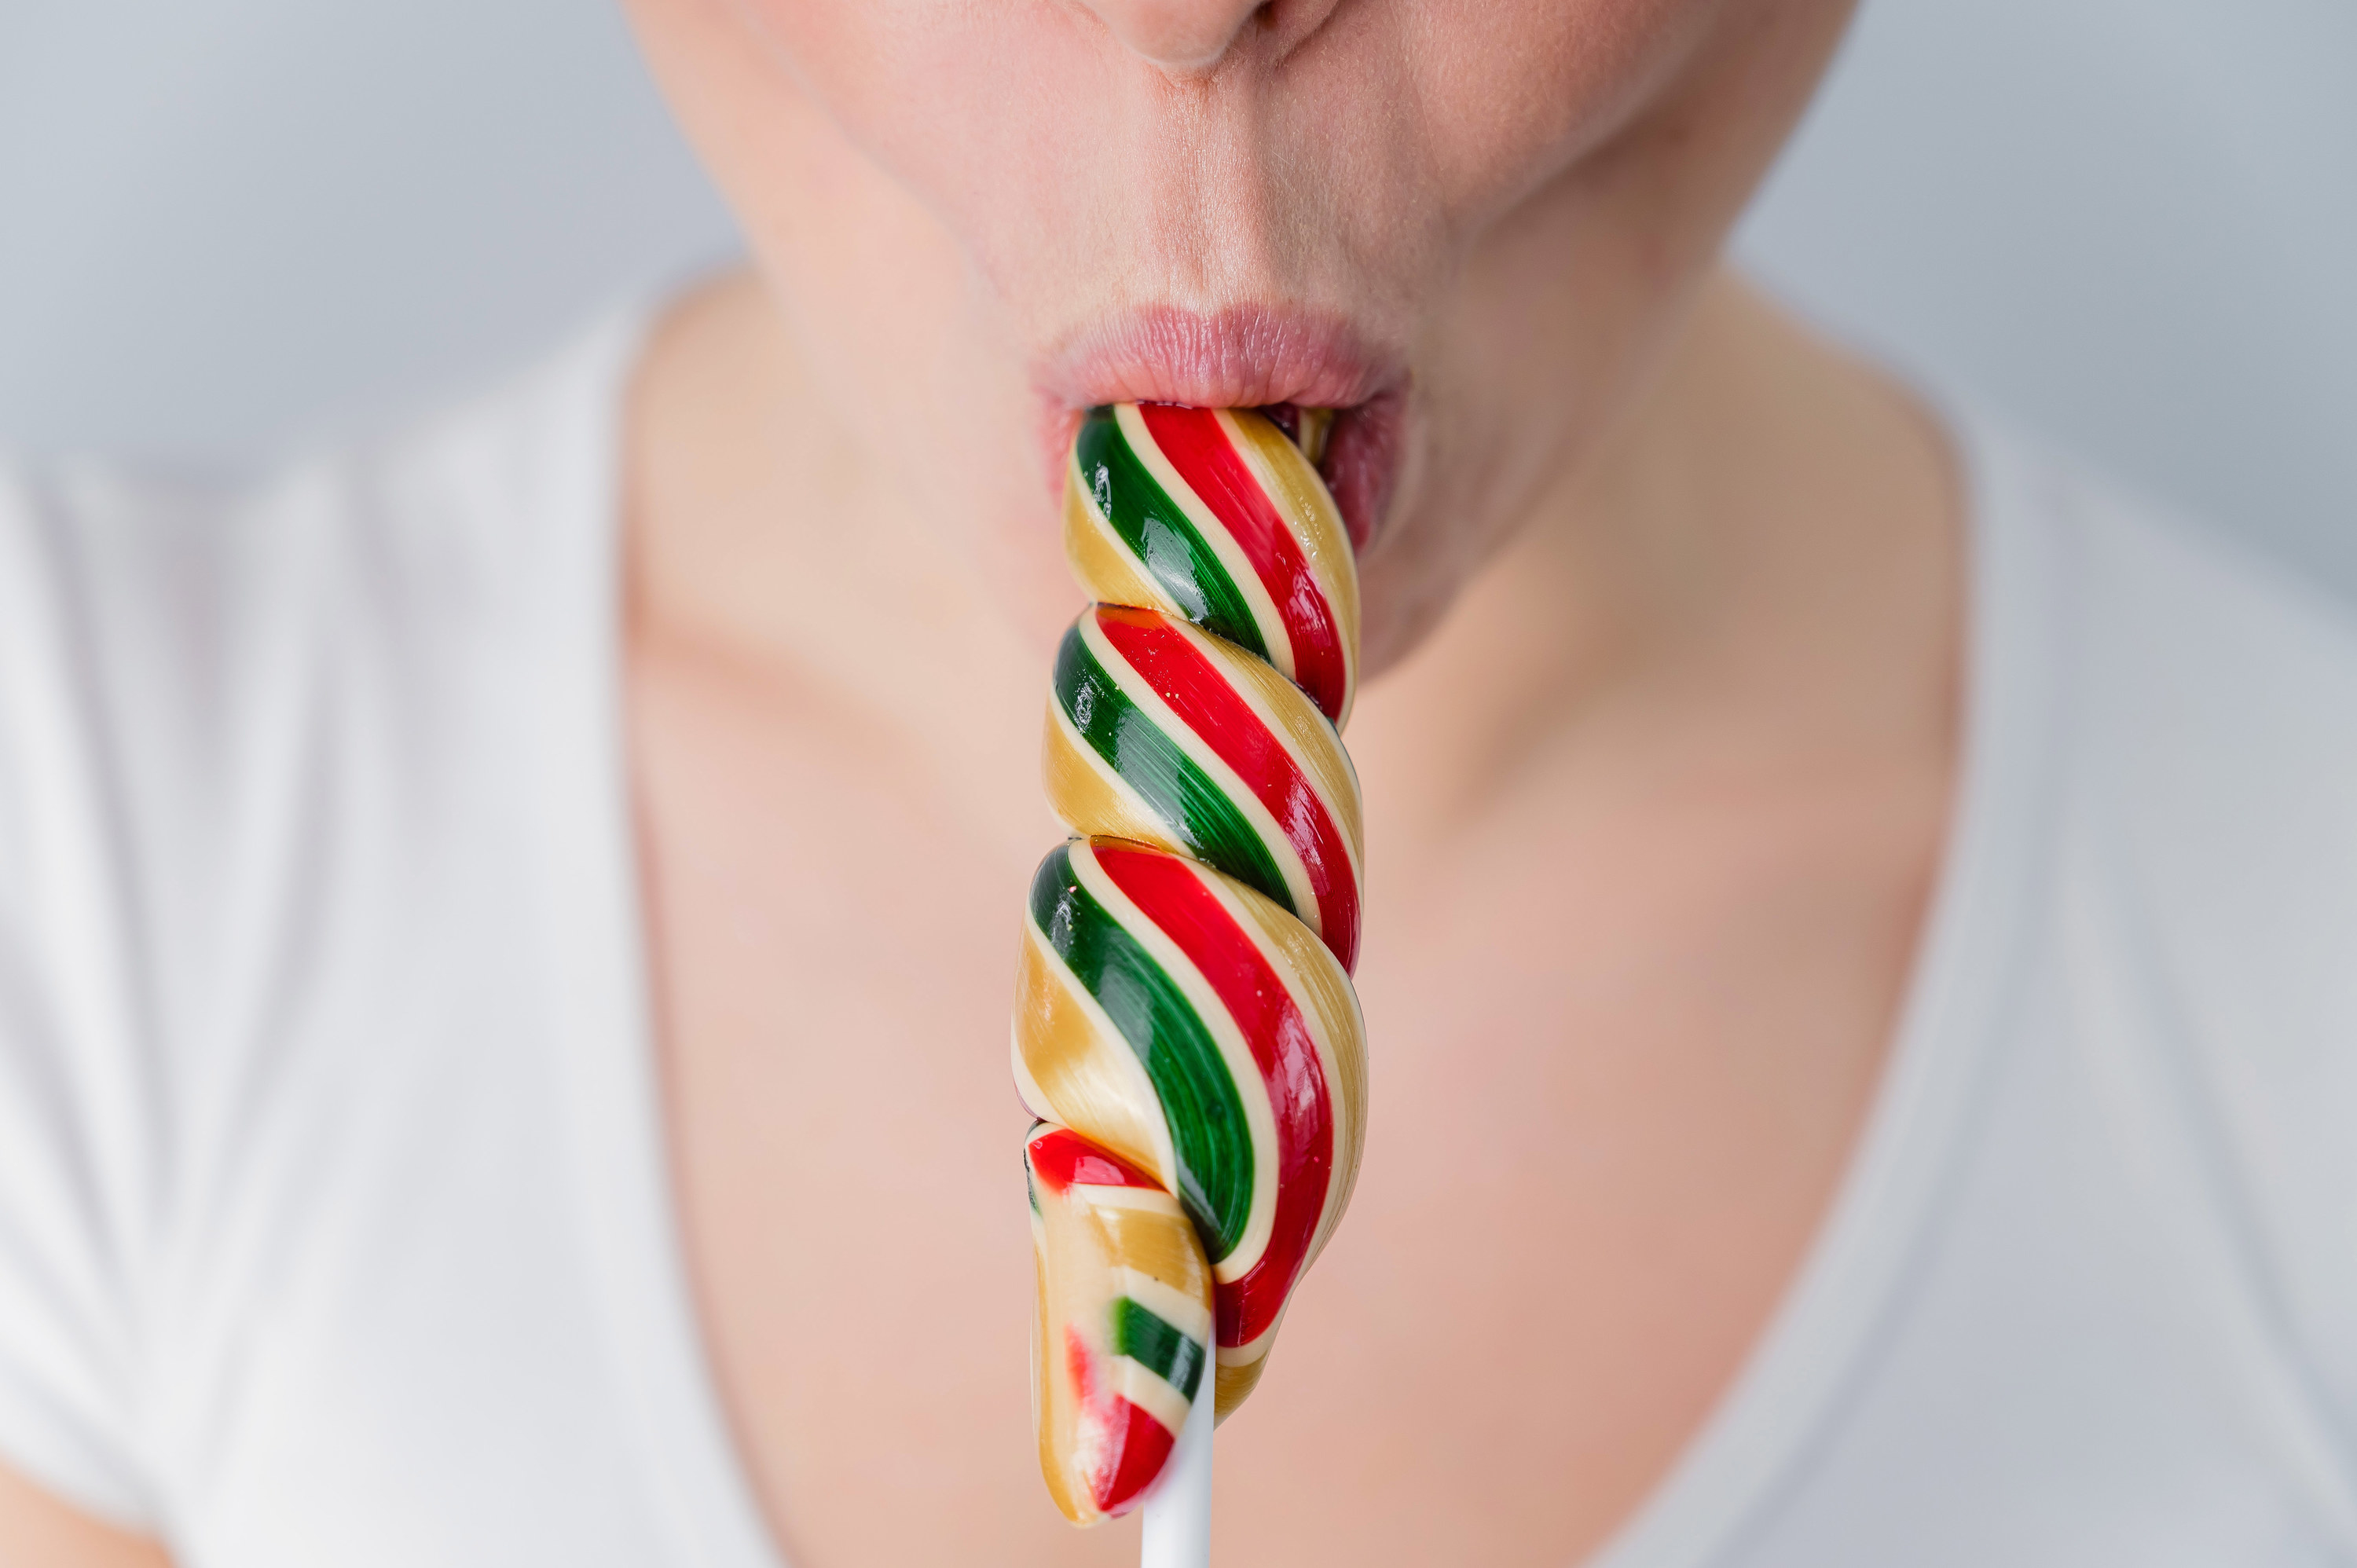 A woman sucking a lollipop